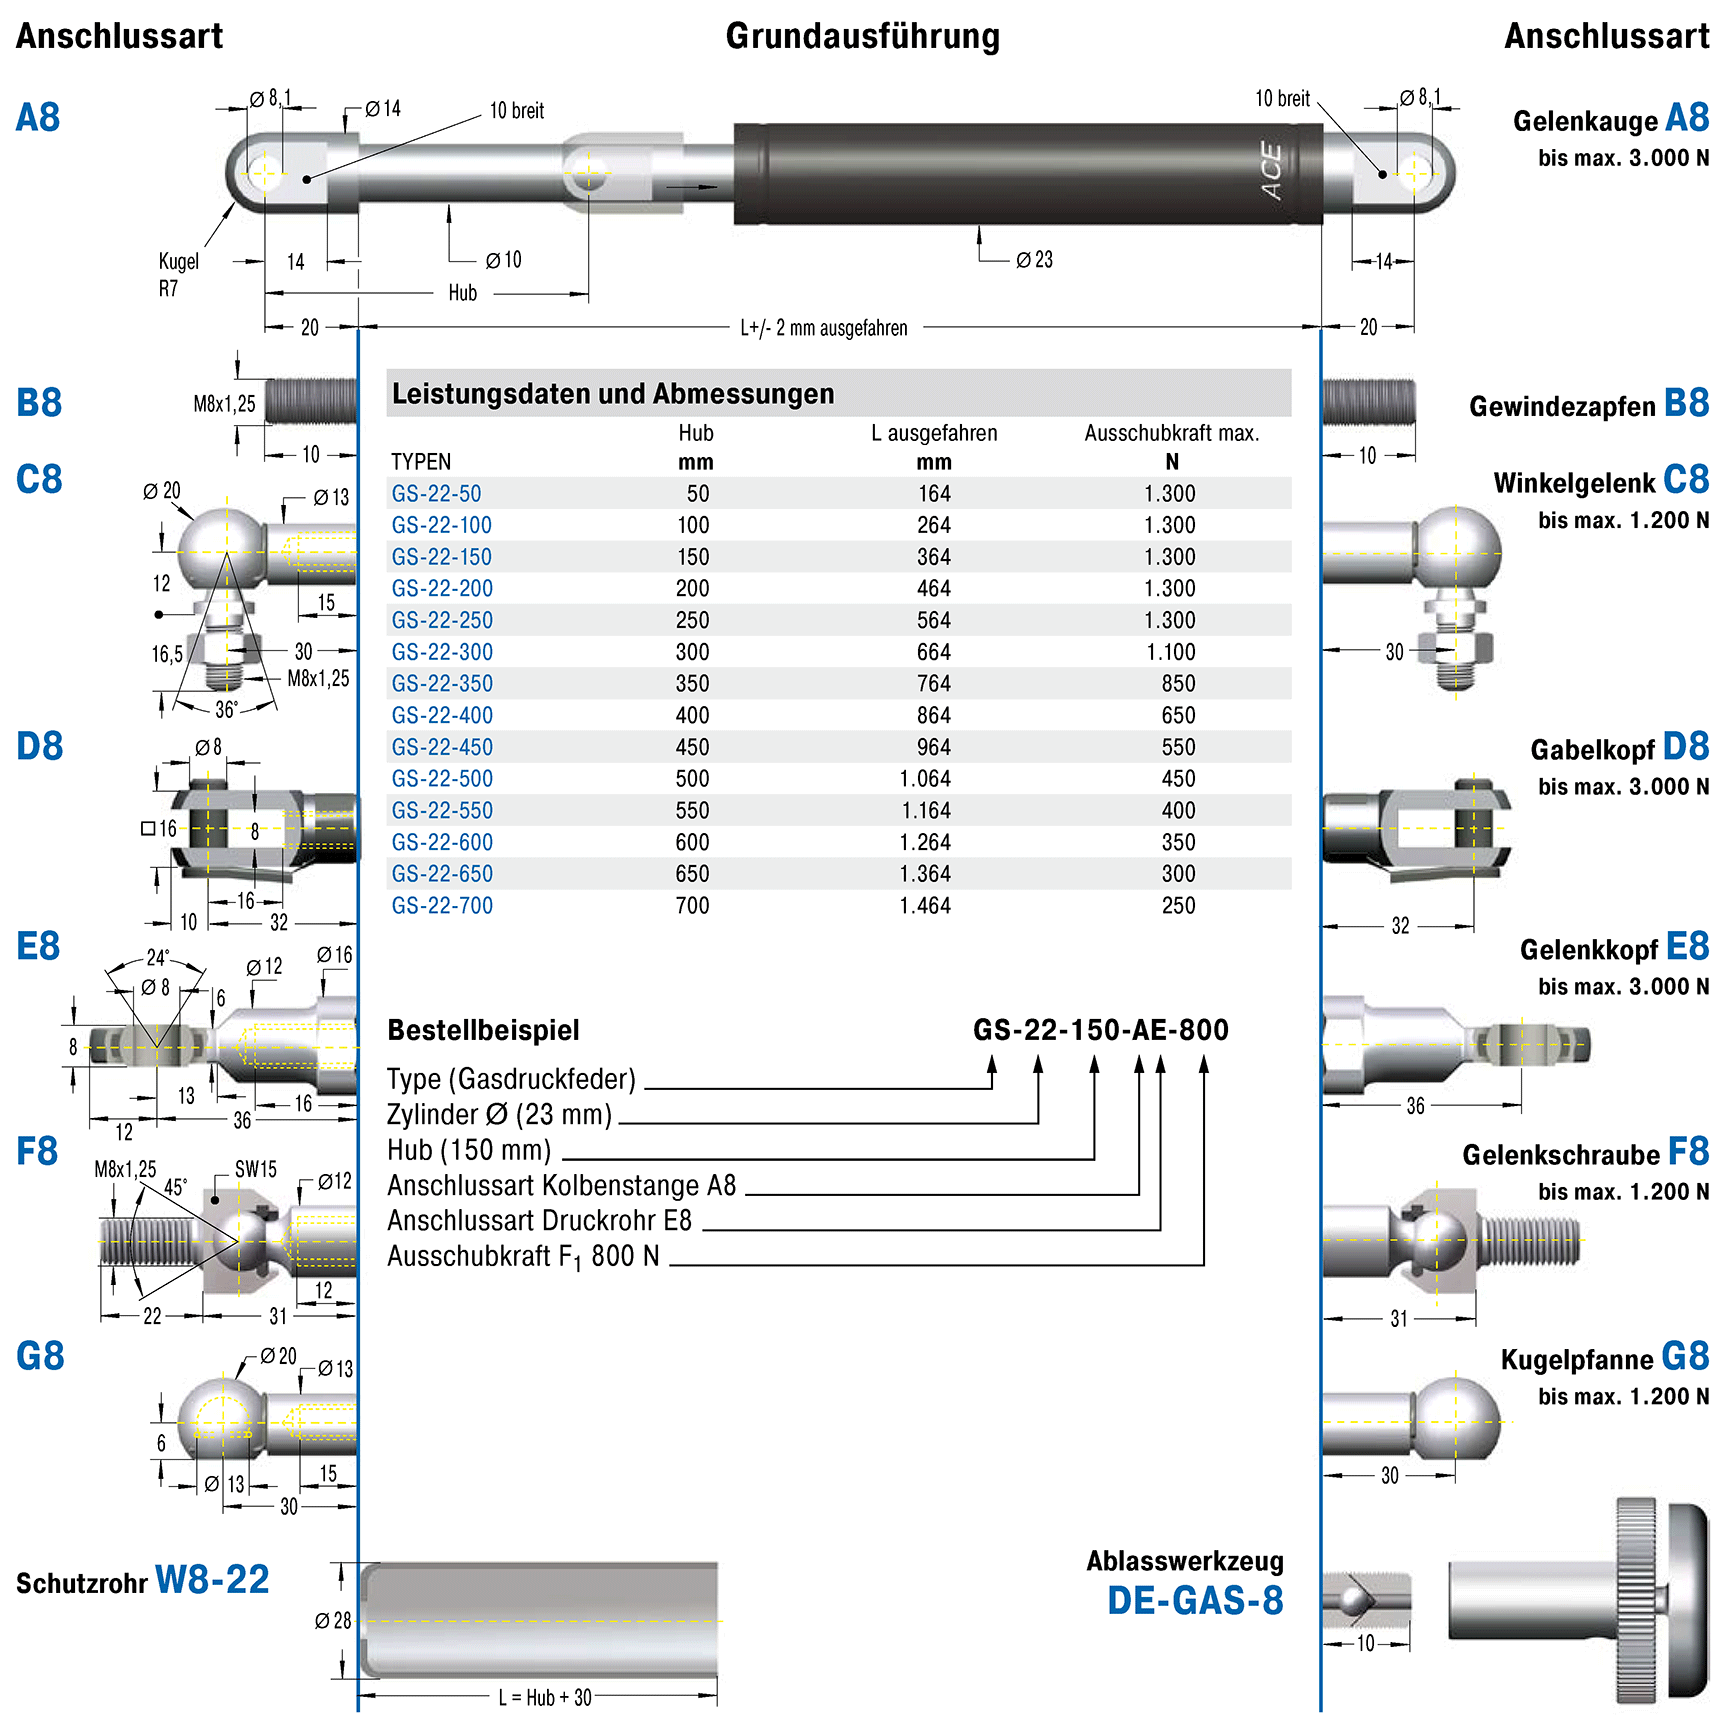 Industrie-Gasdruckfeder, 28 Drm., 500 Hub ACE - ref. GS-28-500-FA